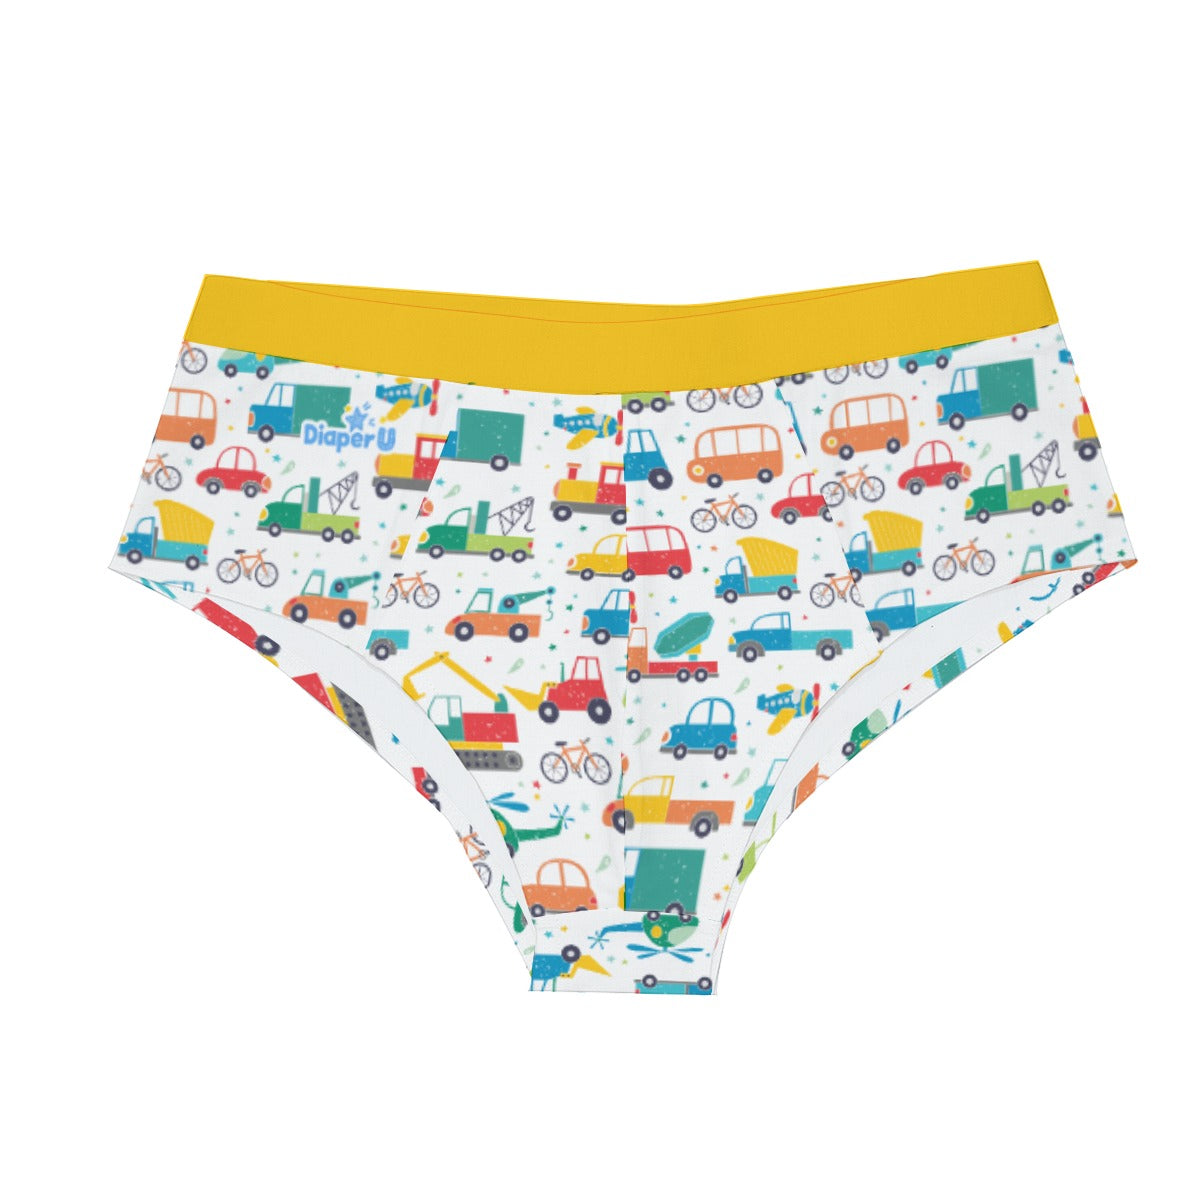 ABDL Adult Baby Boy Briefs Underwear Space Yellow 